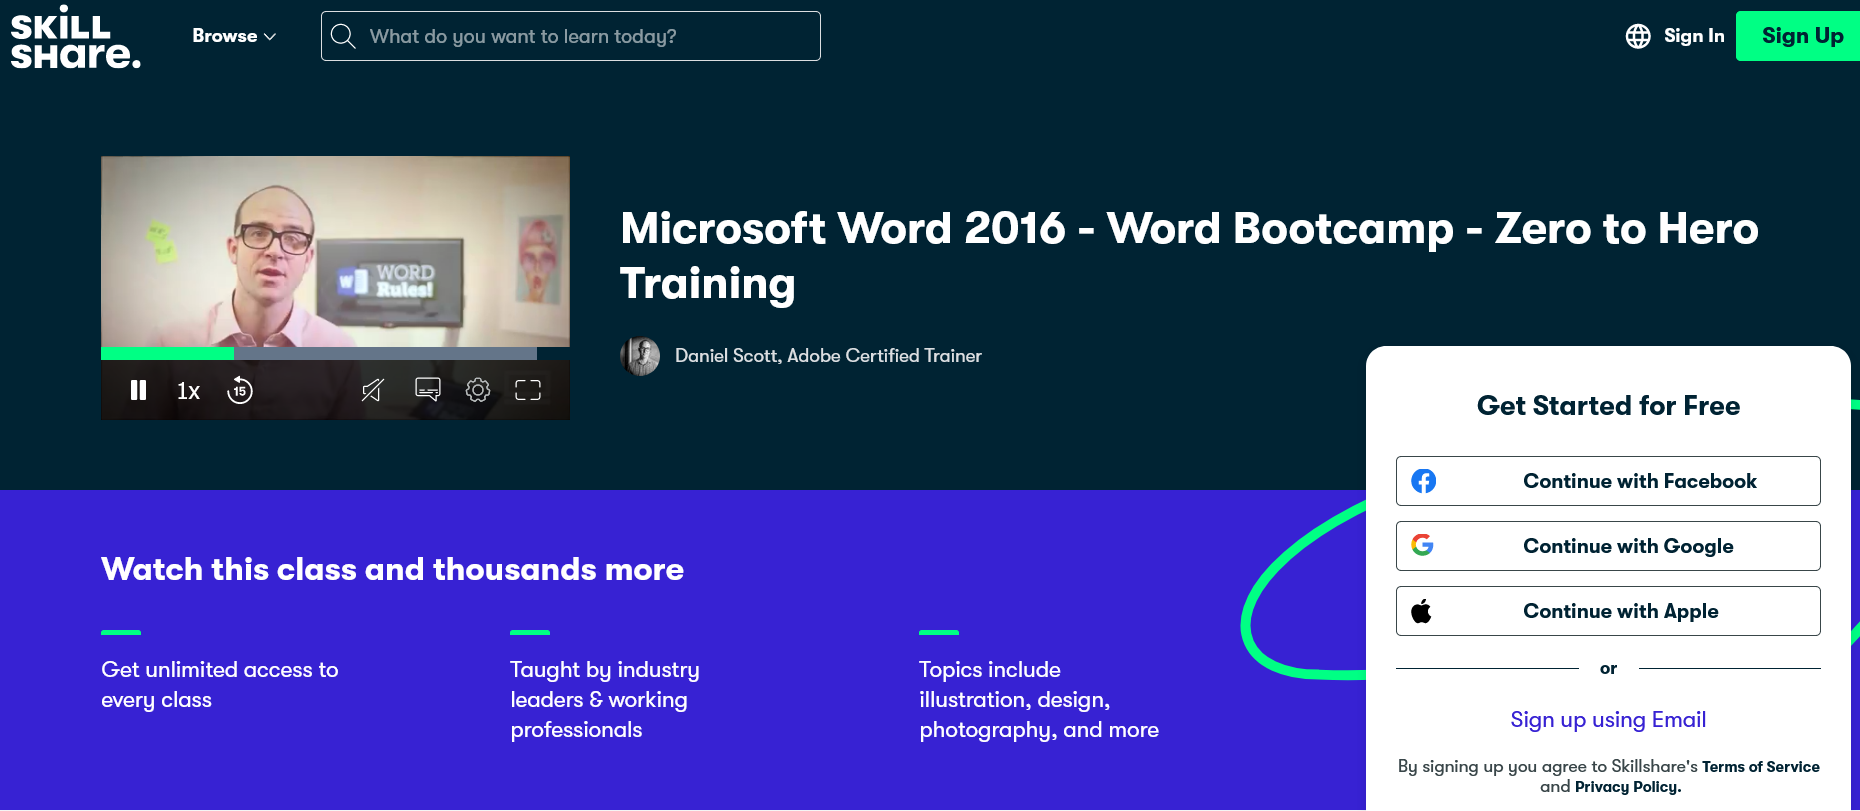 Microsoft Word – Word Bootcamp – Zero to Hero Training